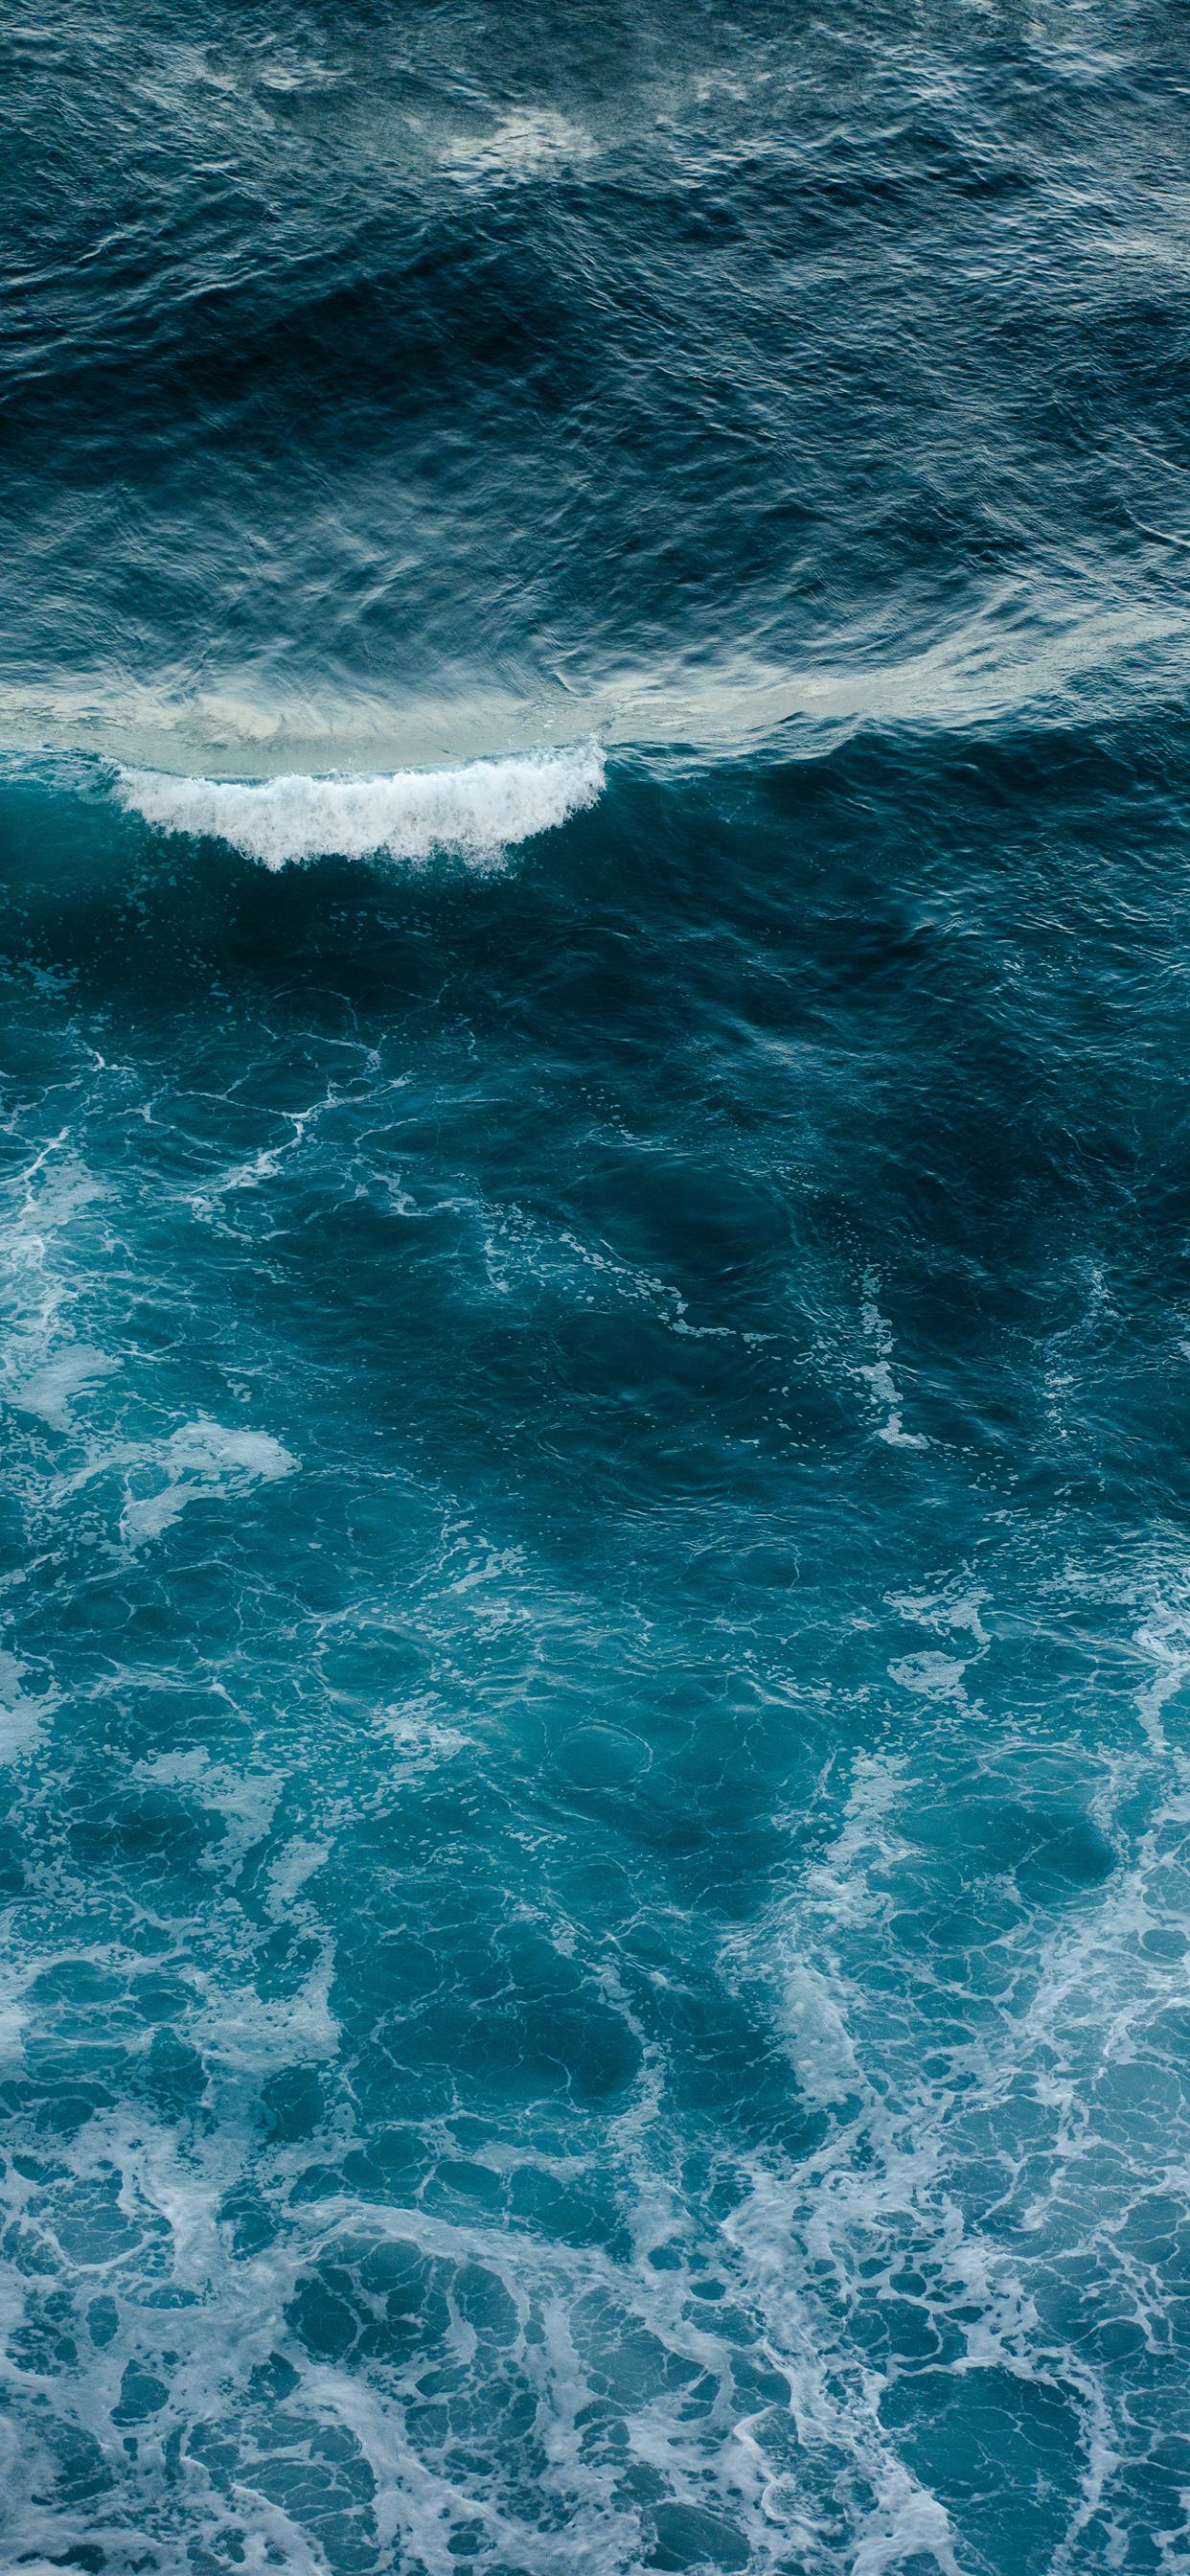 Wild Ocean iPhone Wallpaper Free Download